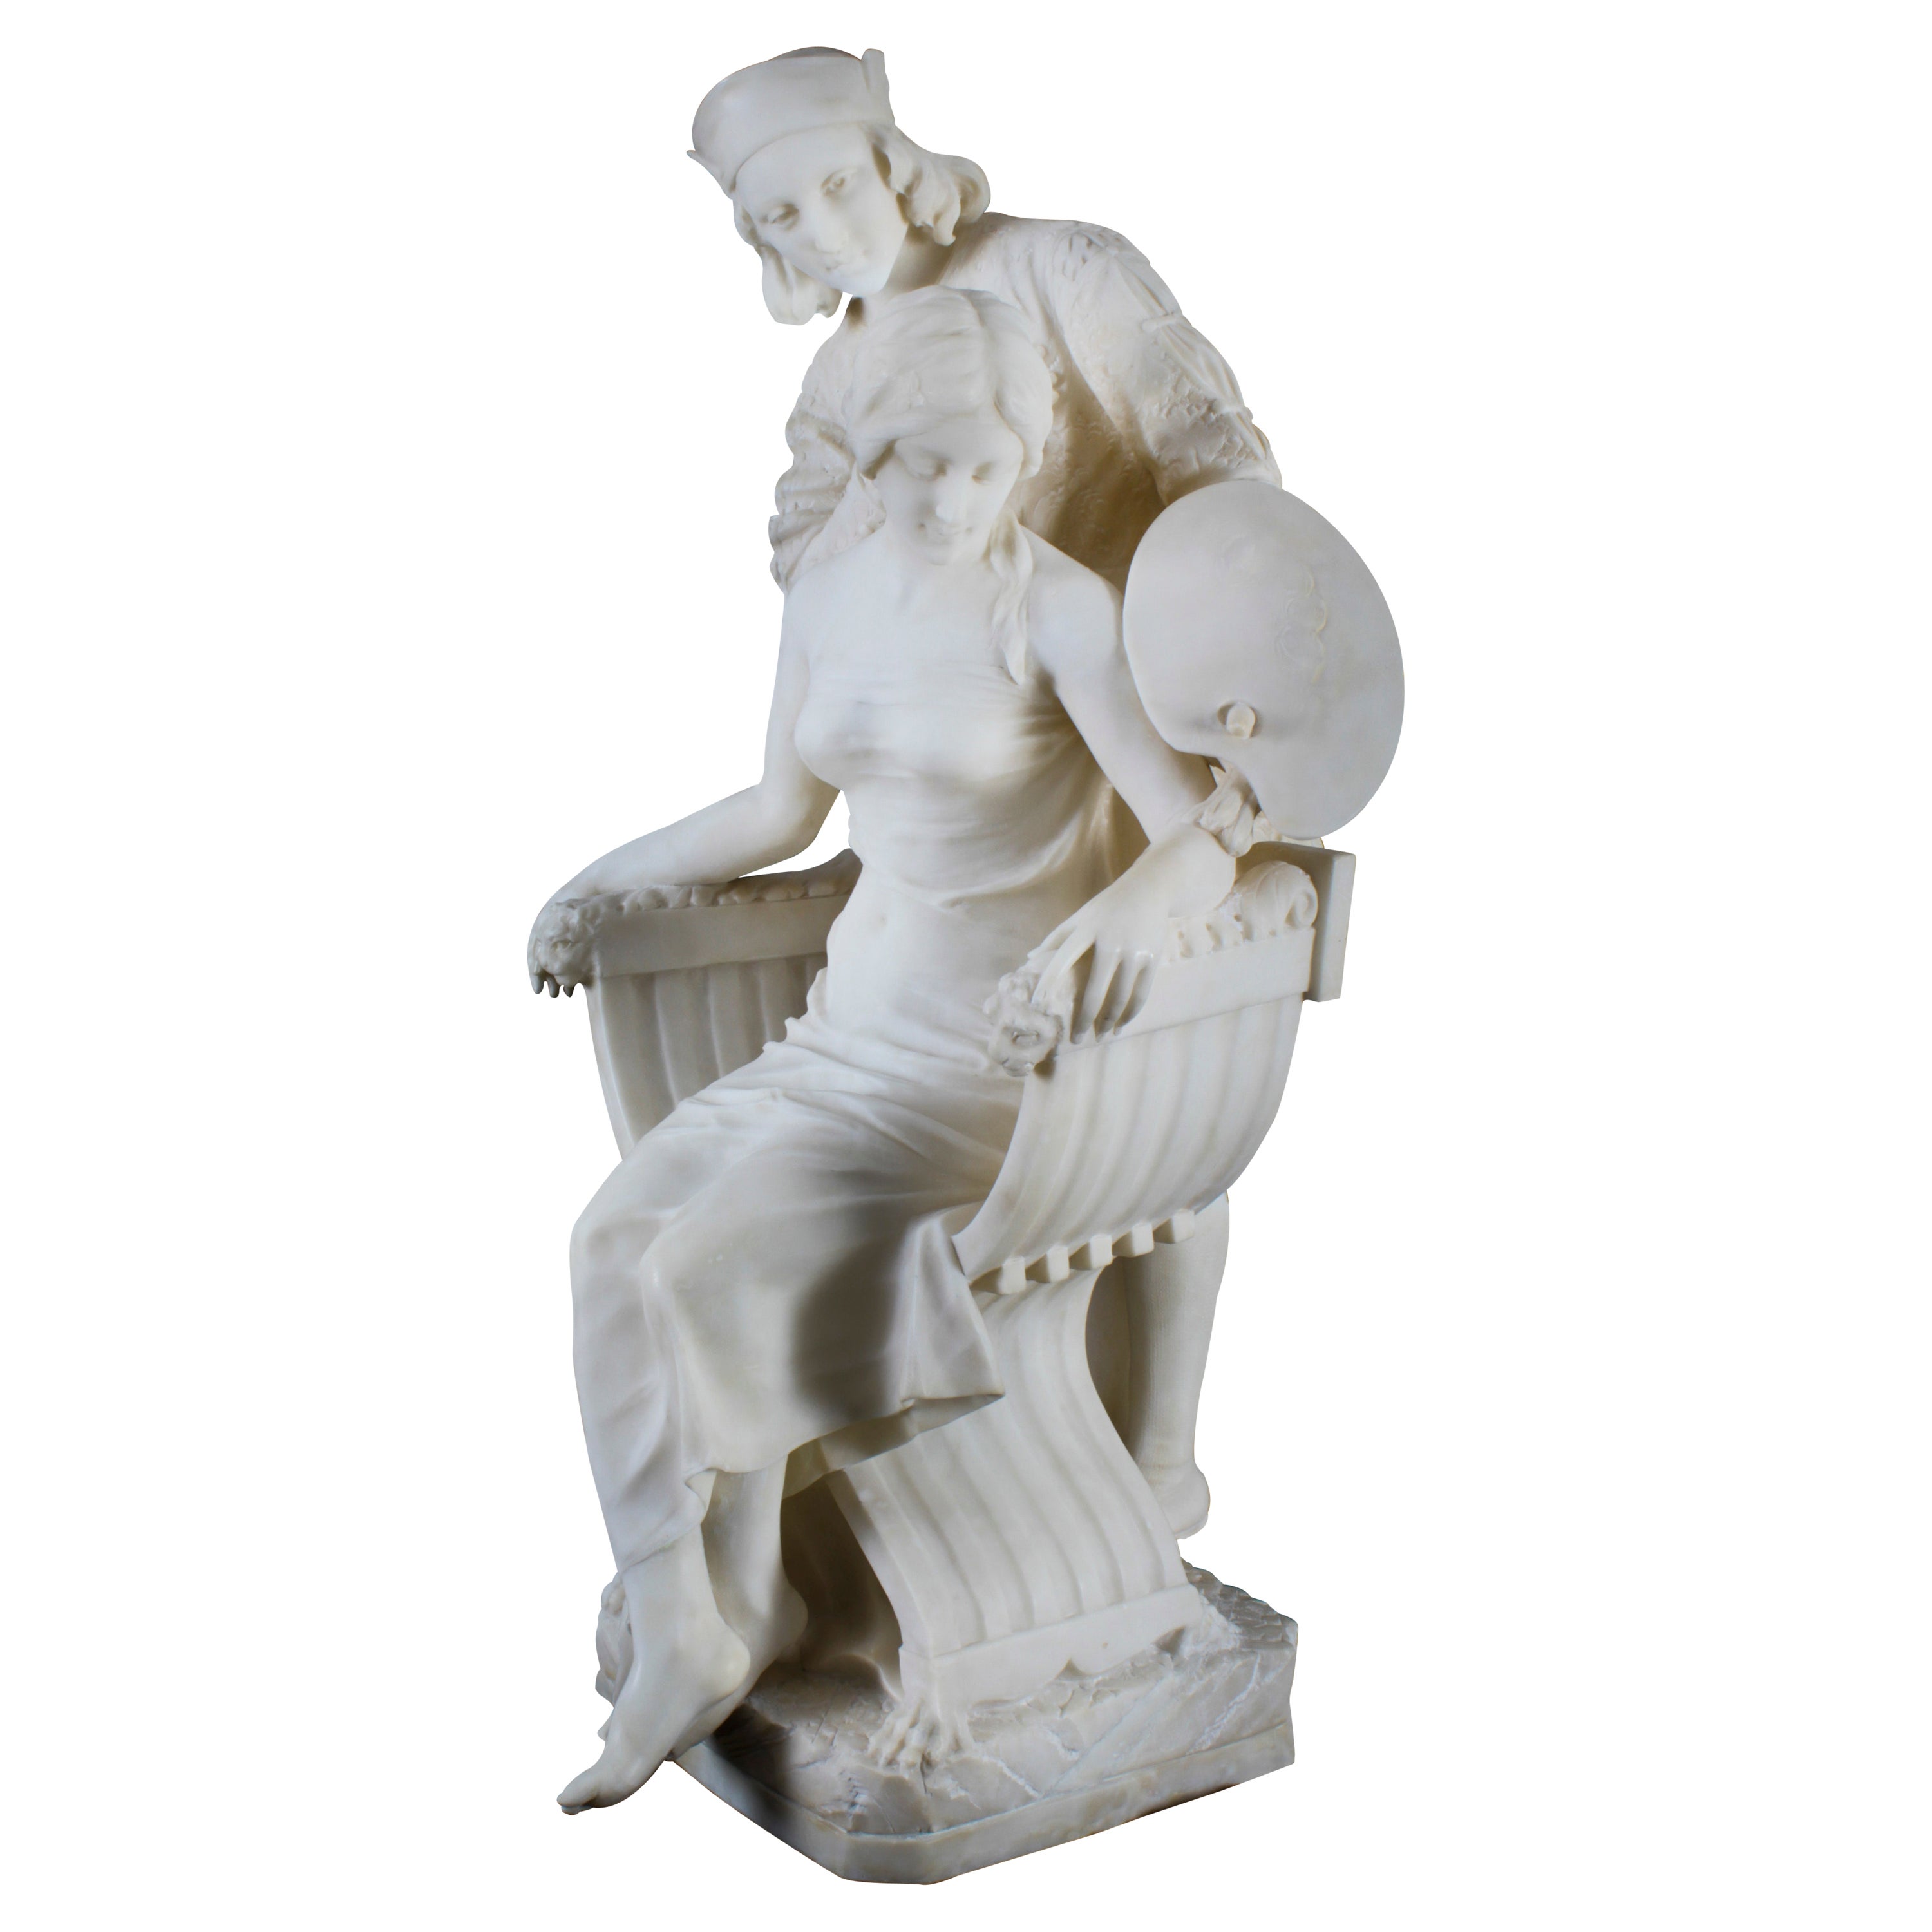 Antique Large Alabaster Sculpture P. Emilio Fiaschi 19th Century